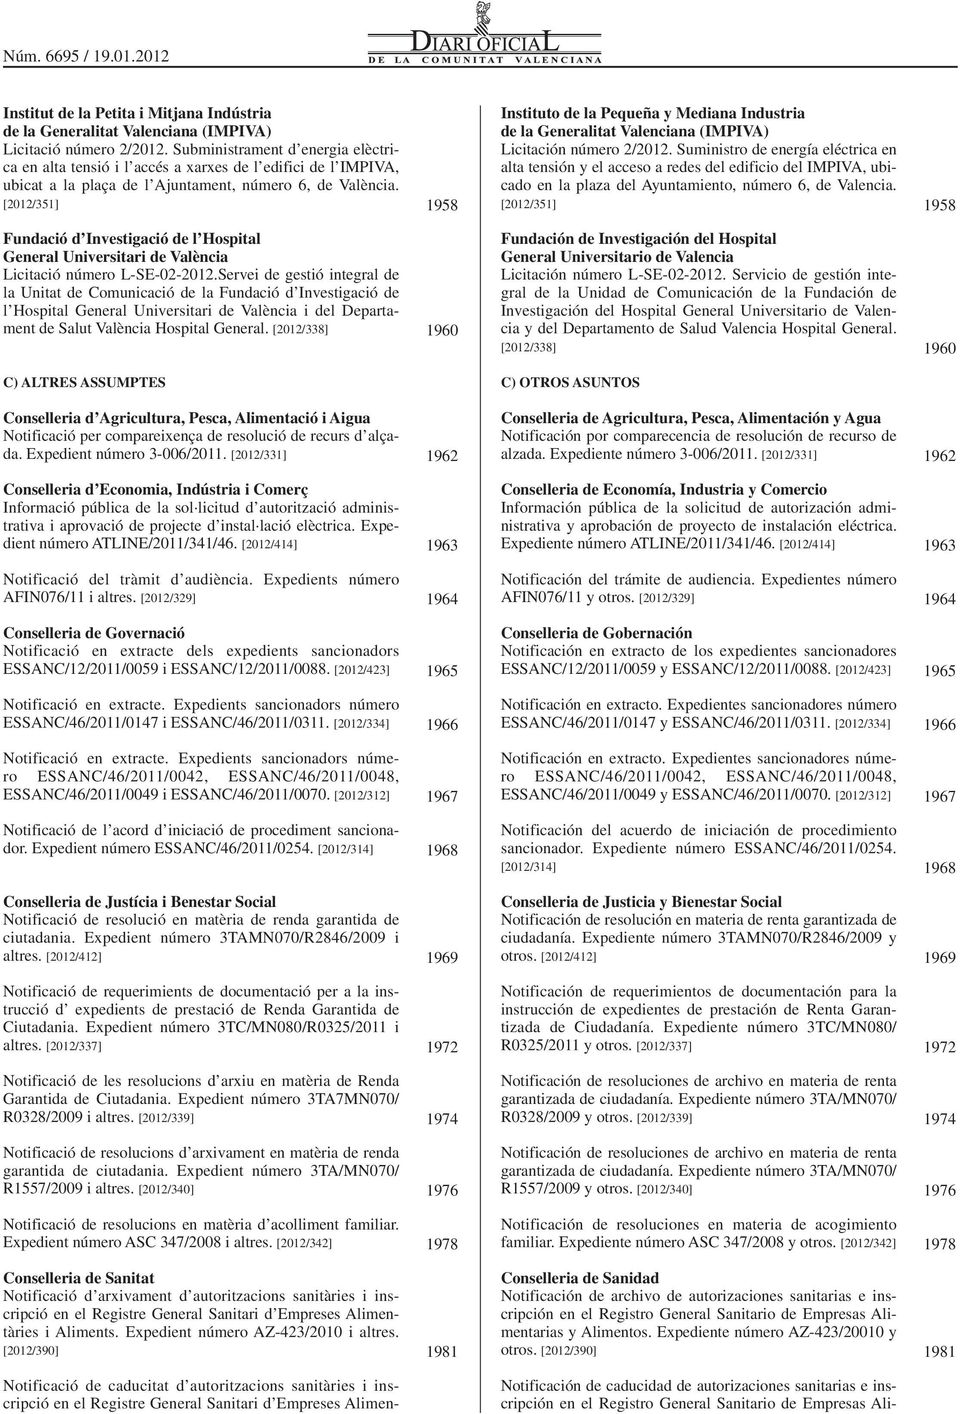 [2012/351] 1958 Instituto de la Pequeña y Mediana Industria de la Generalitat Valenciana (IMPIVA) Licitación número 2/2012.